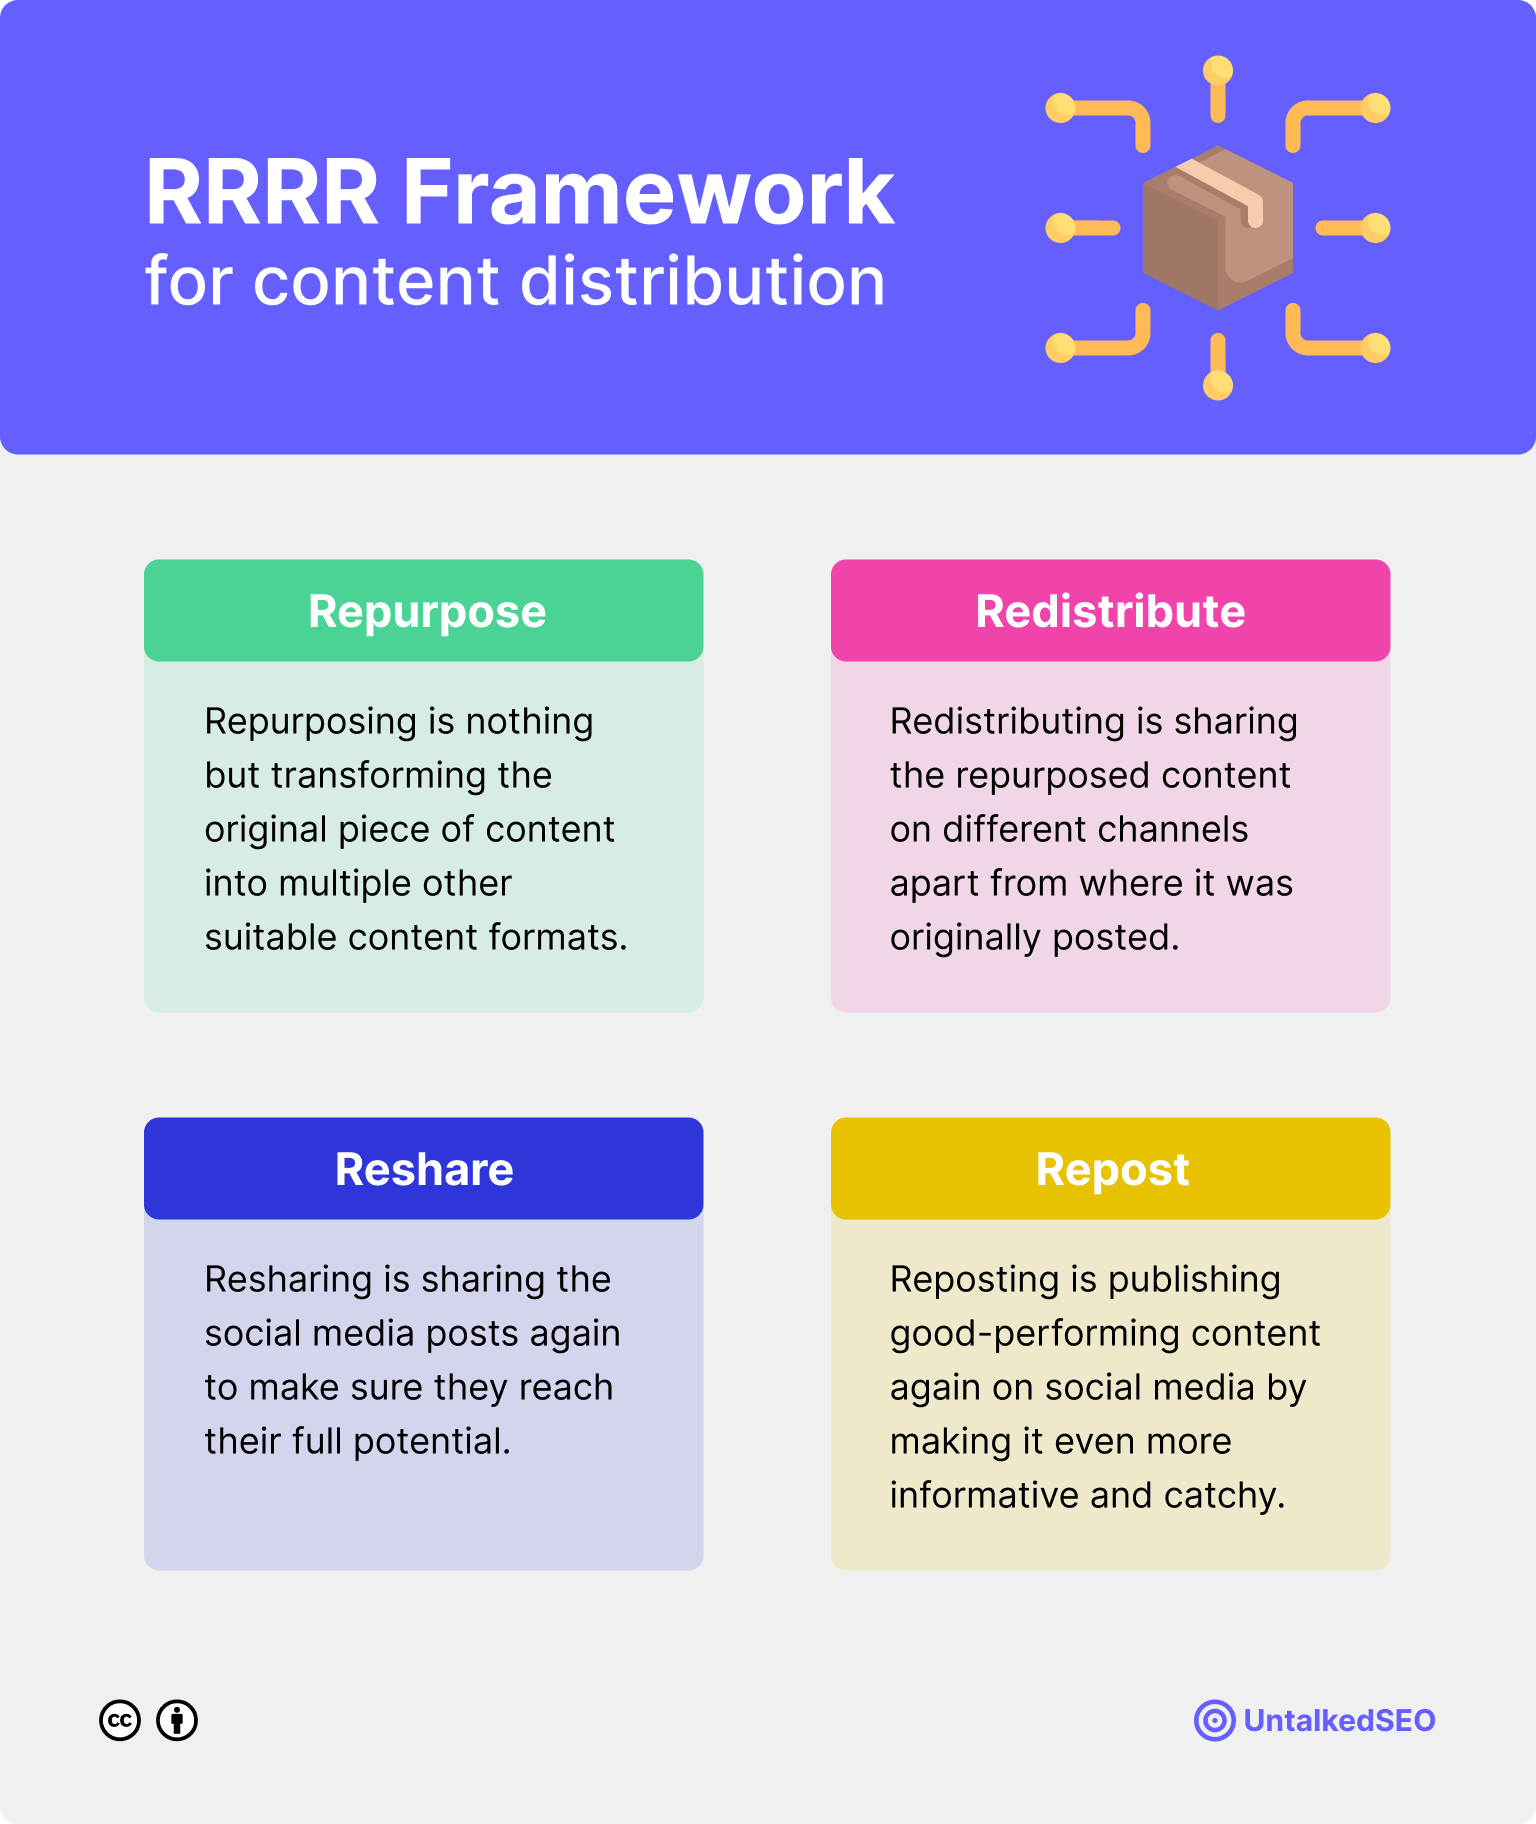 RRRR Framework for Content Distribution